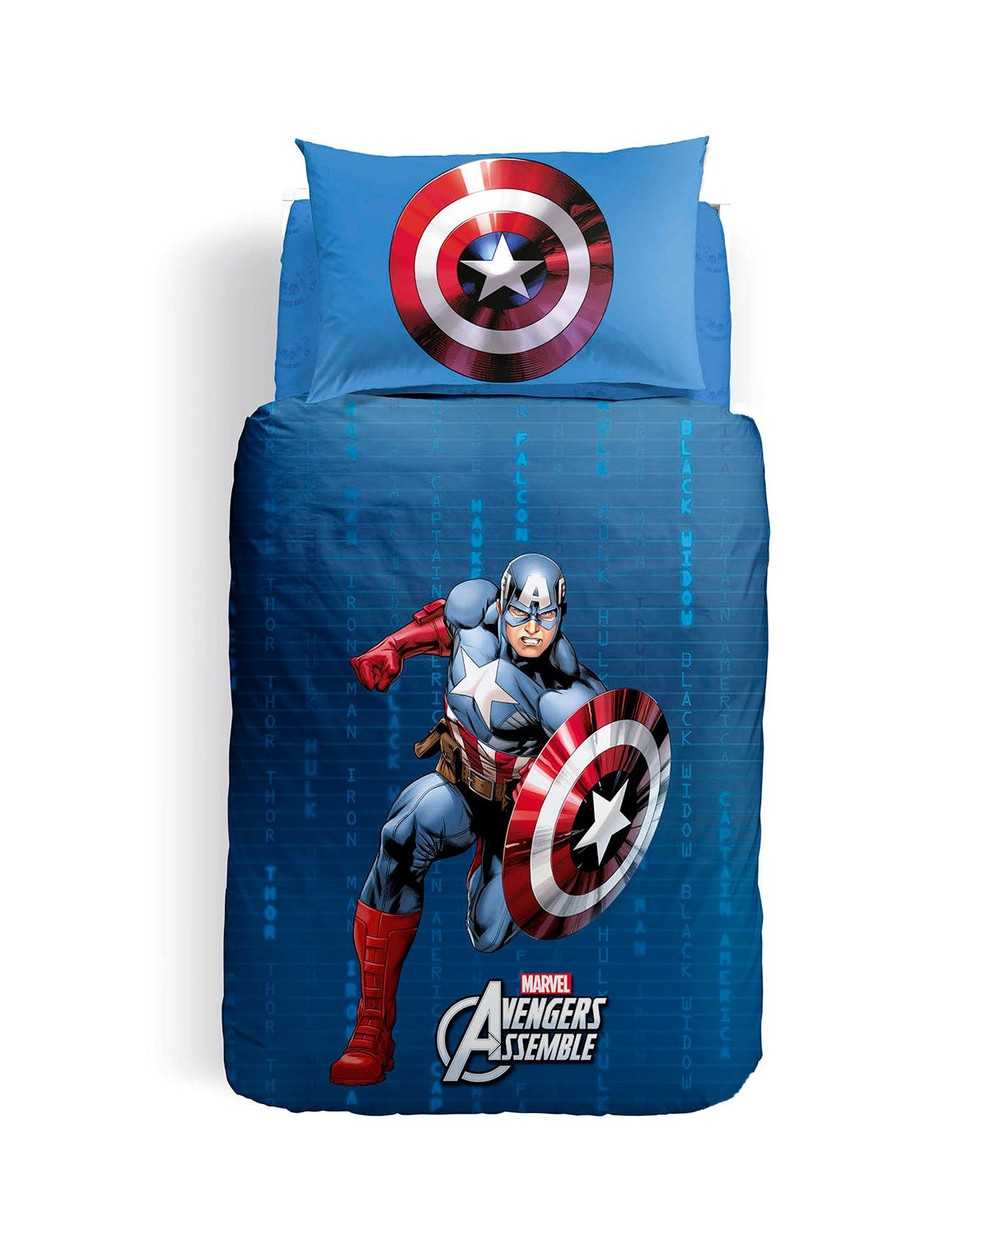 Duvet Set SINGLE BED Captain America